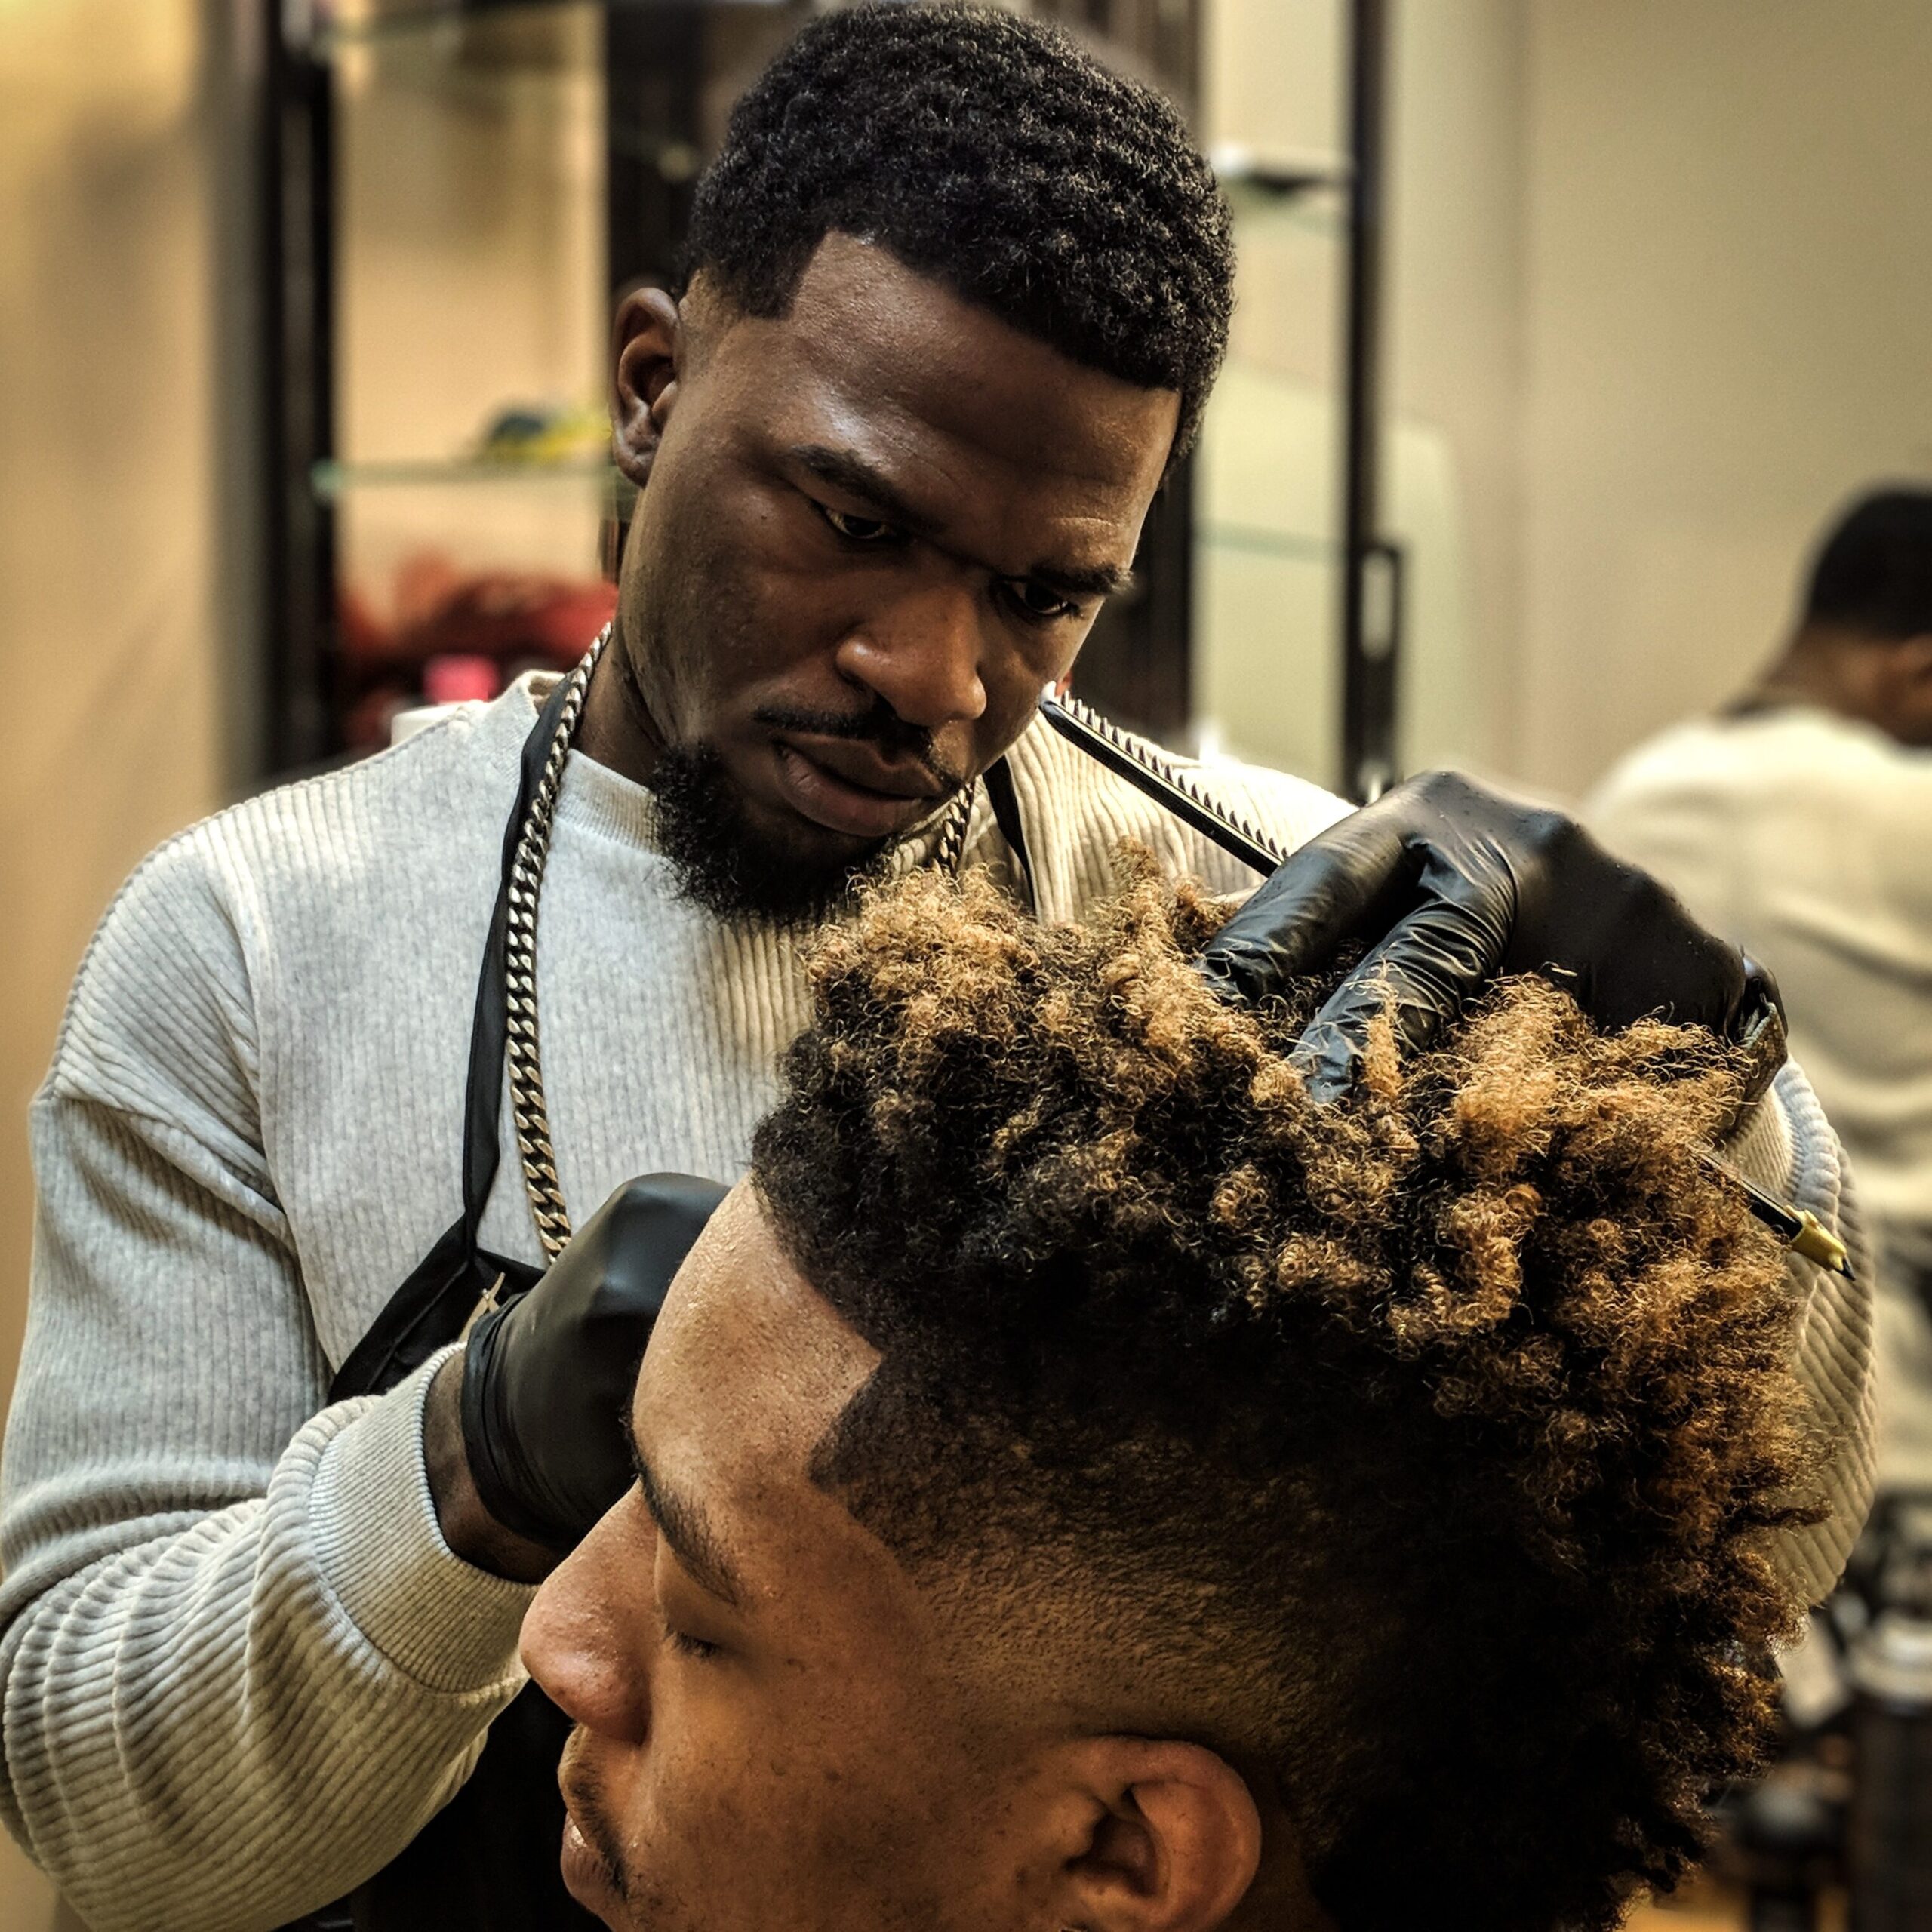 Man getting his hair cut at a salon